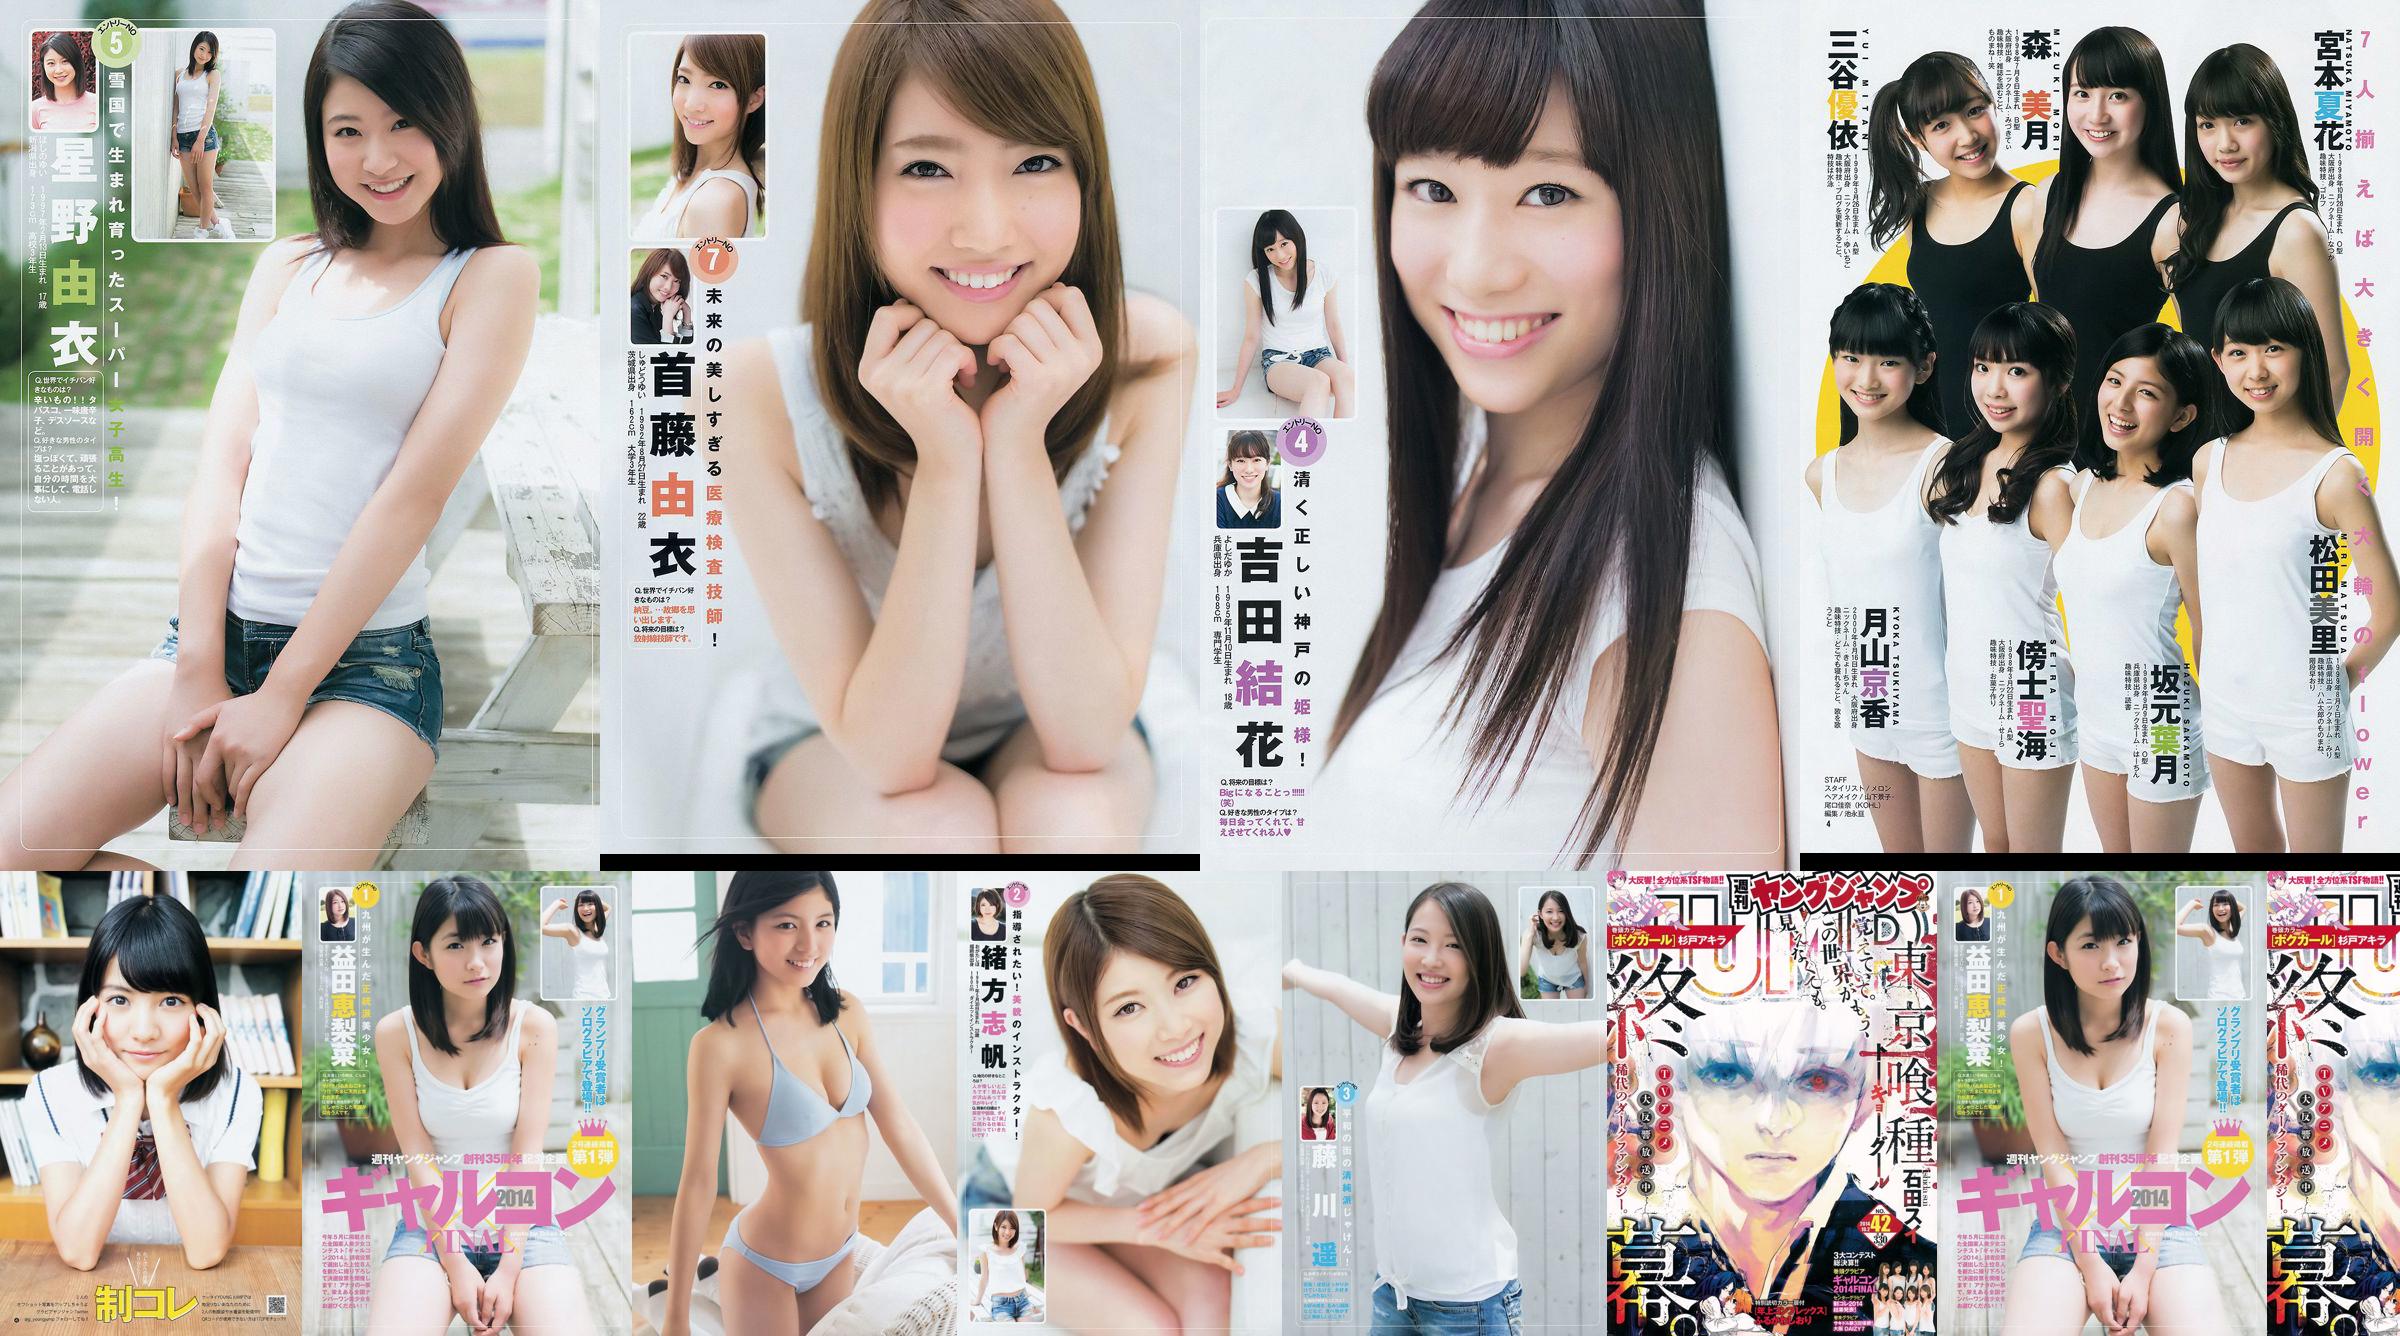 Galcon 2014 System Collection Ultimate 2014 Osaka DAIZY7 [Weekly Young Jump] 2014 No.42 Photo No.8850b2 Pagina 1